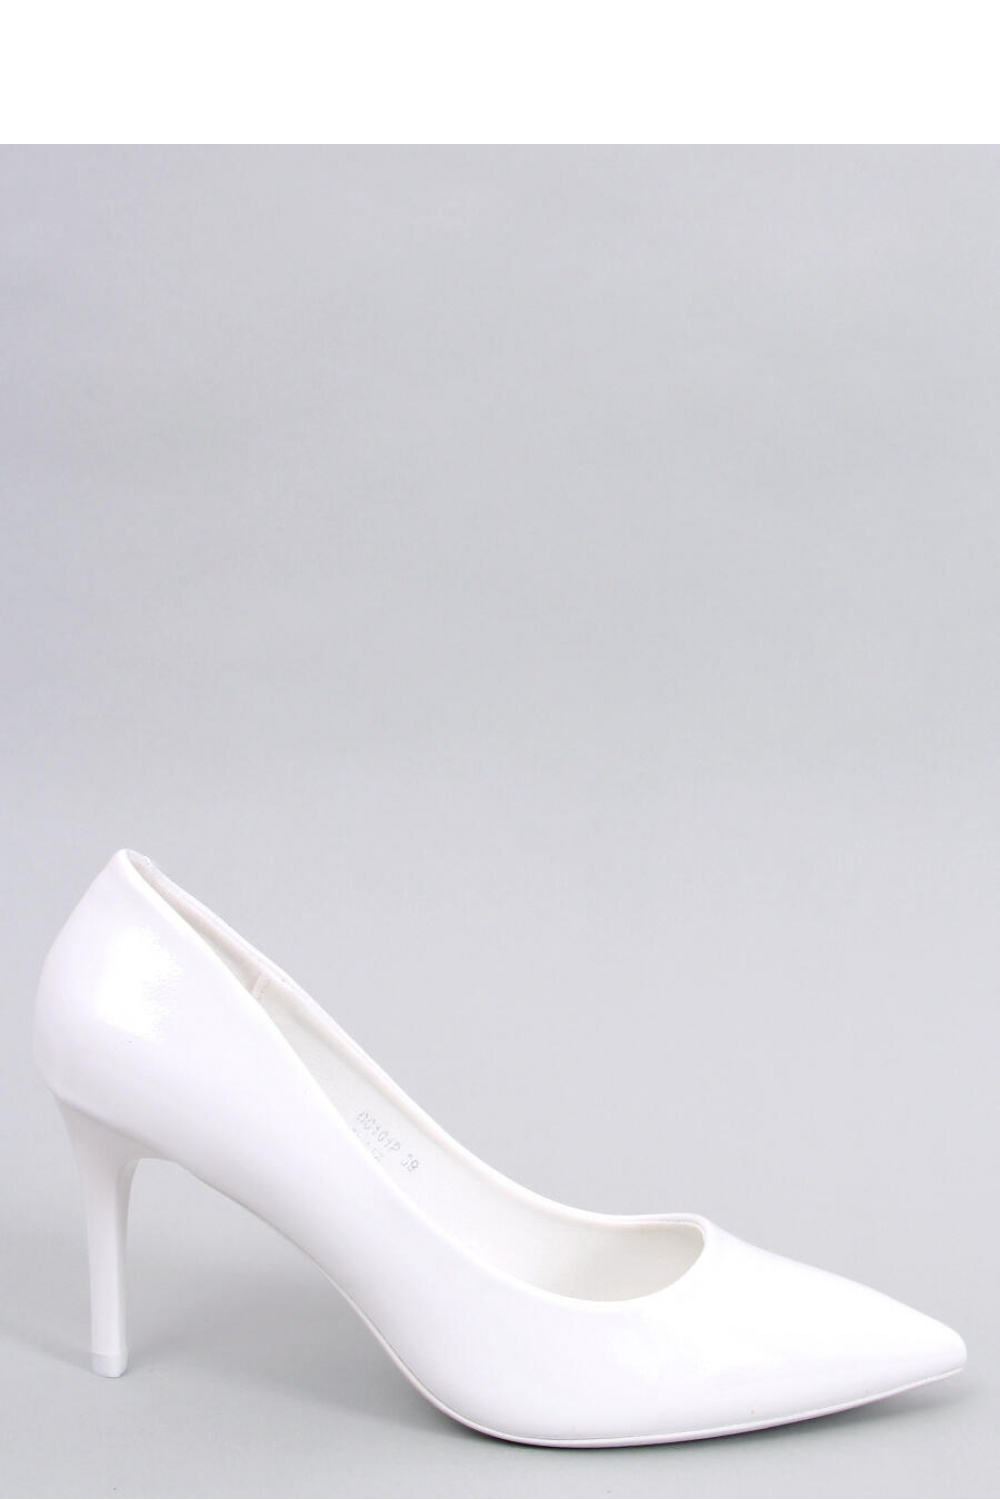 High heels model 181928 Inello